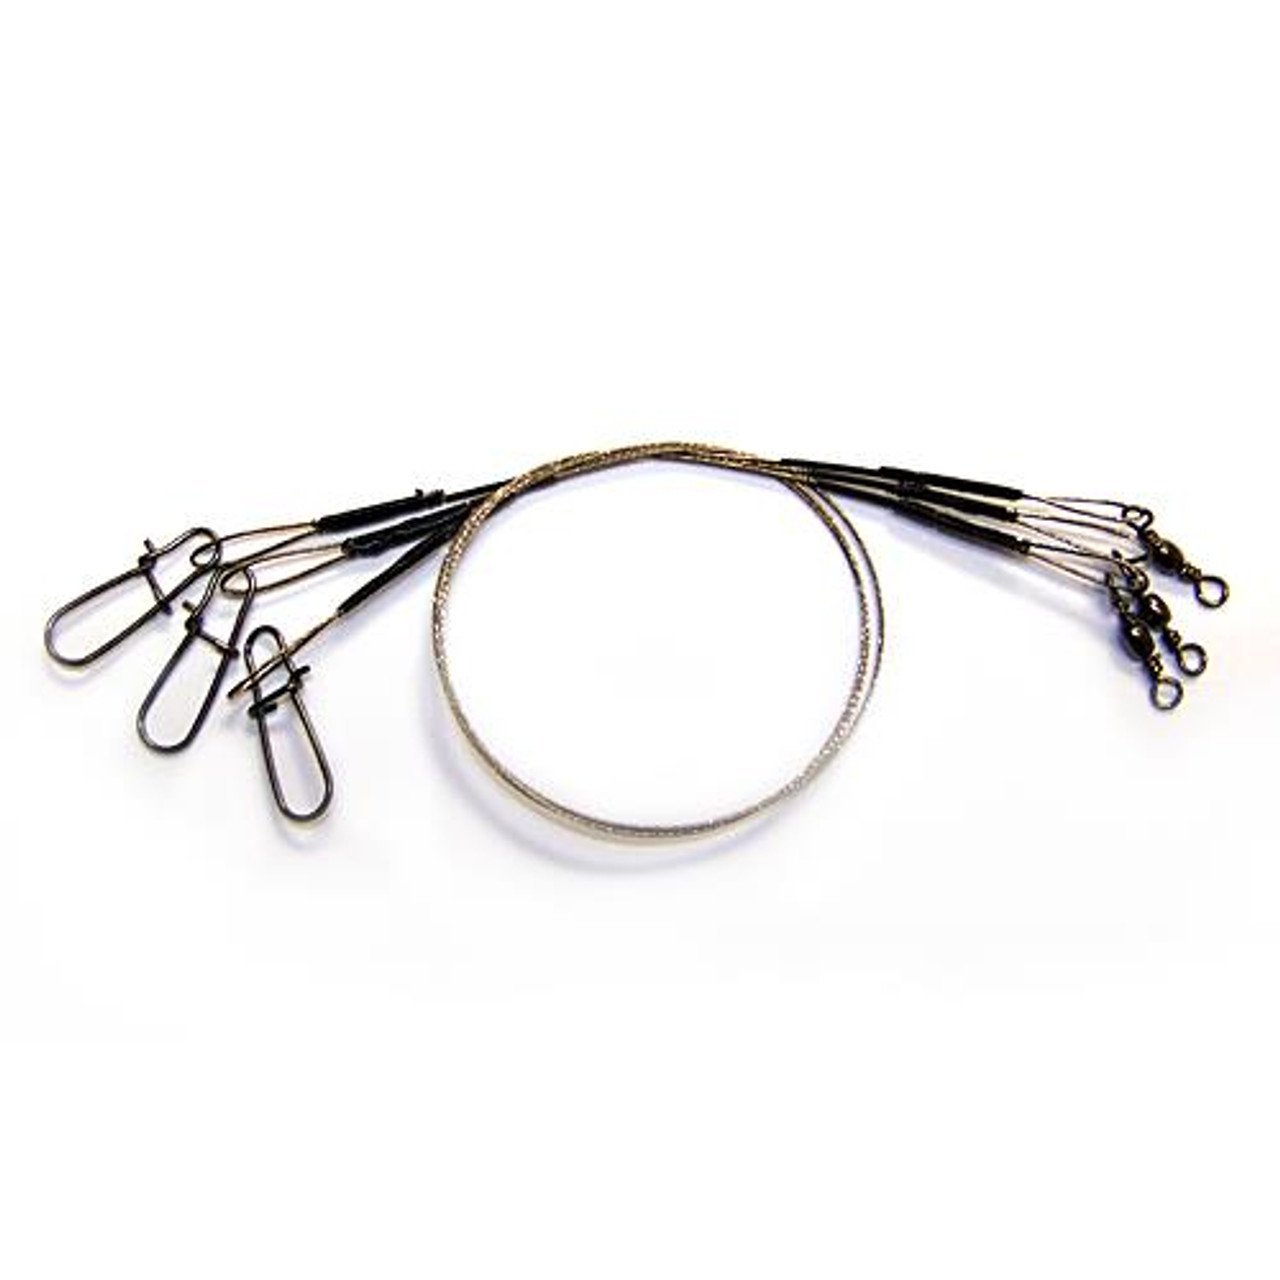 Eagle Claw Wire Micro Leaders - FishUSA